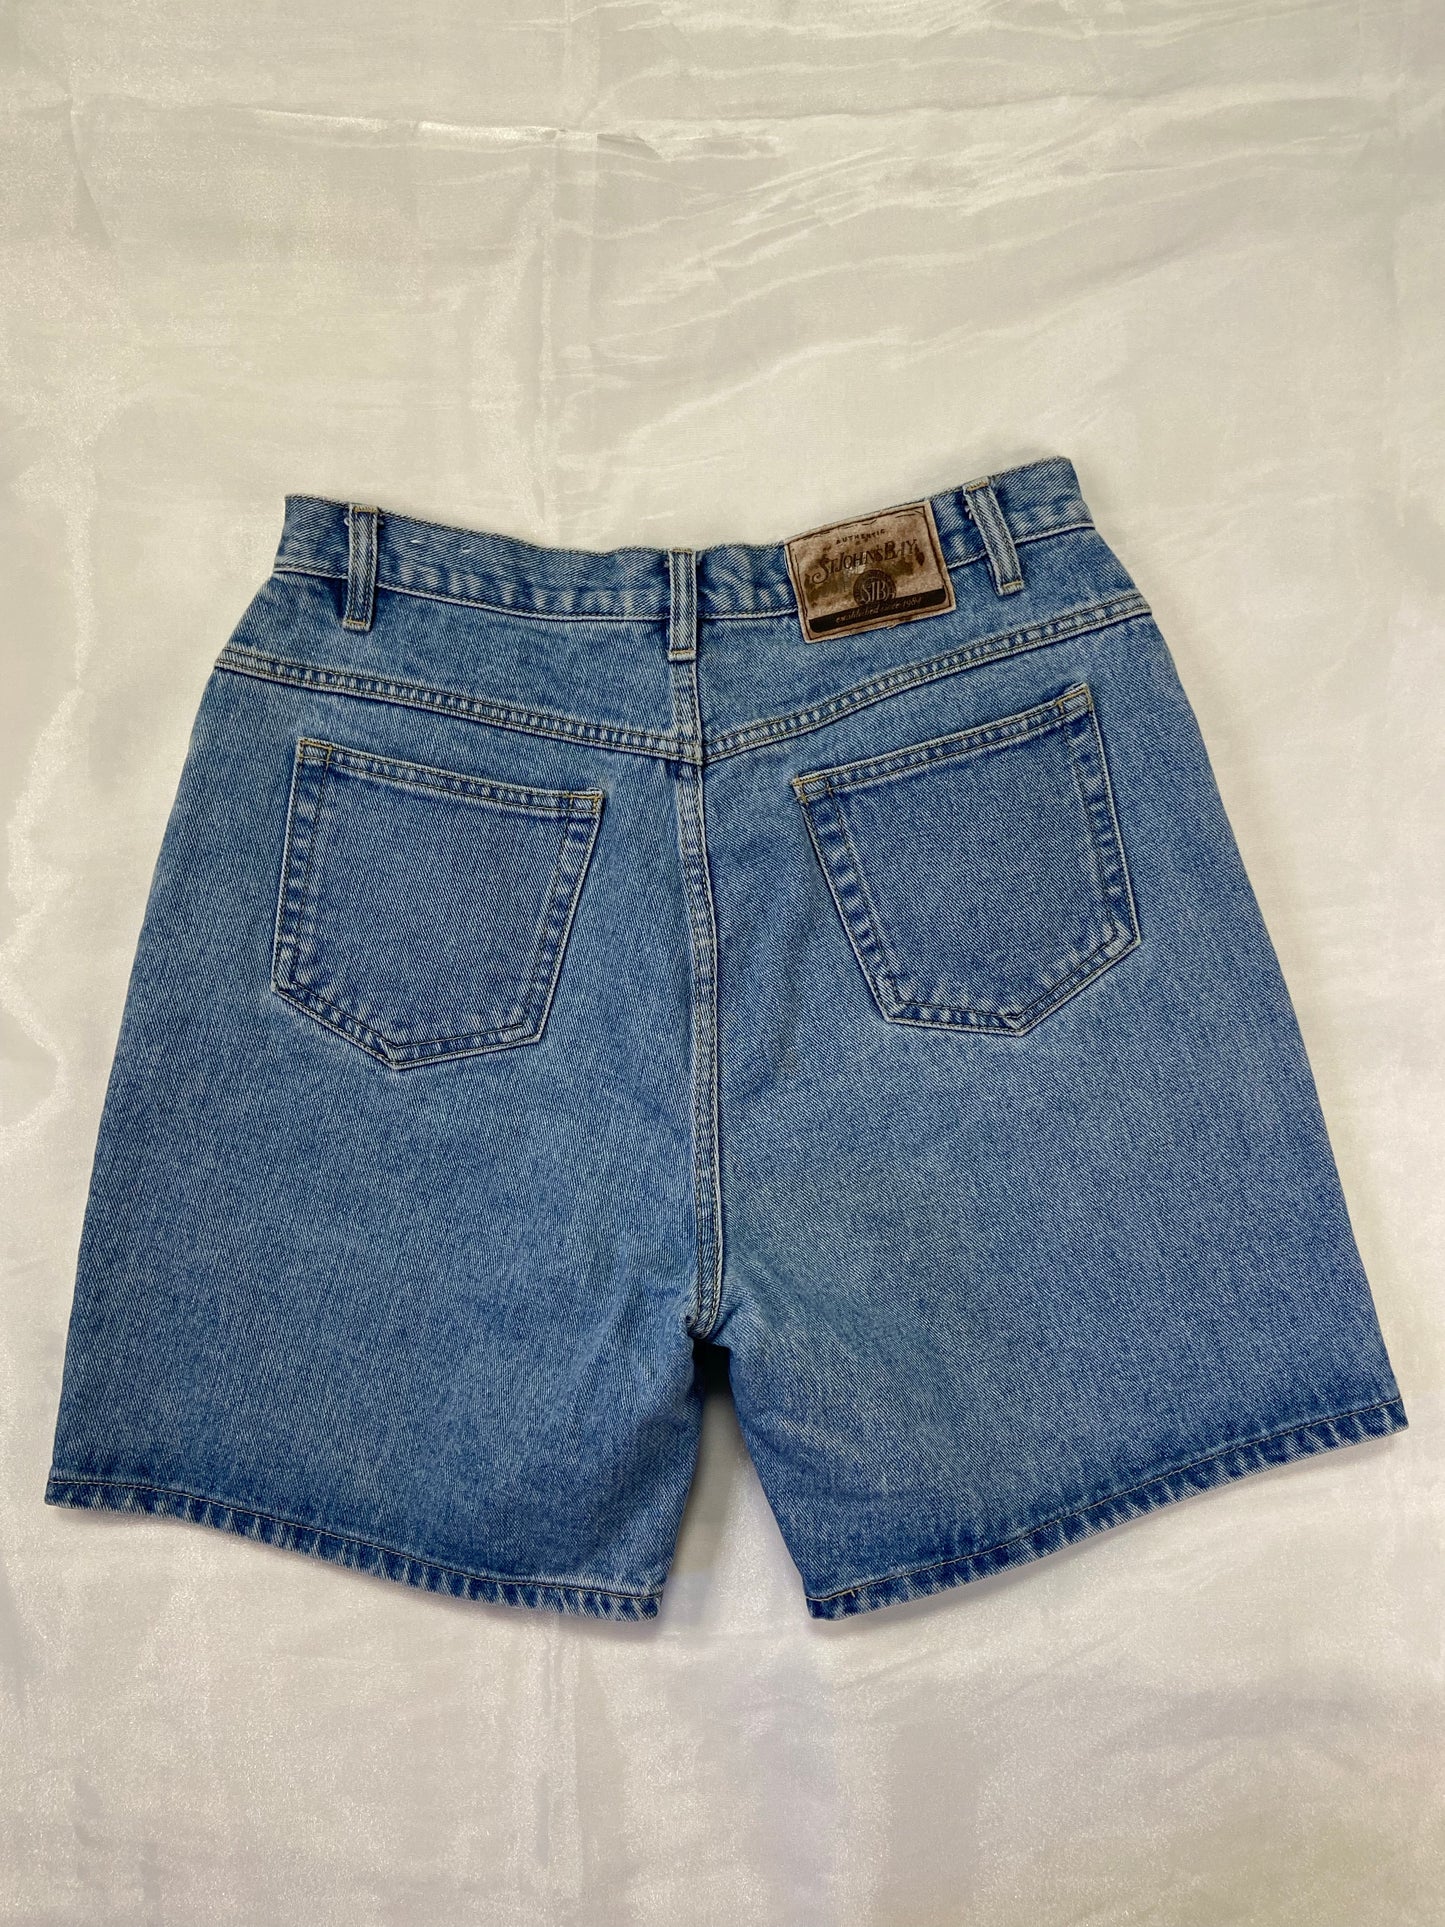 Medium Wash Denim Shorts - 29”